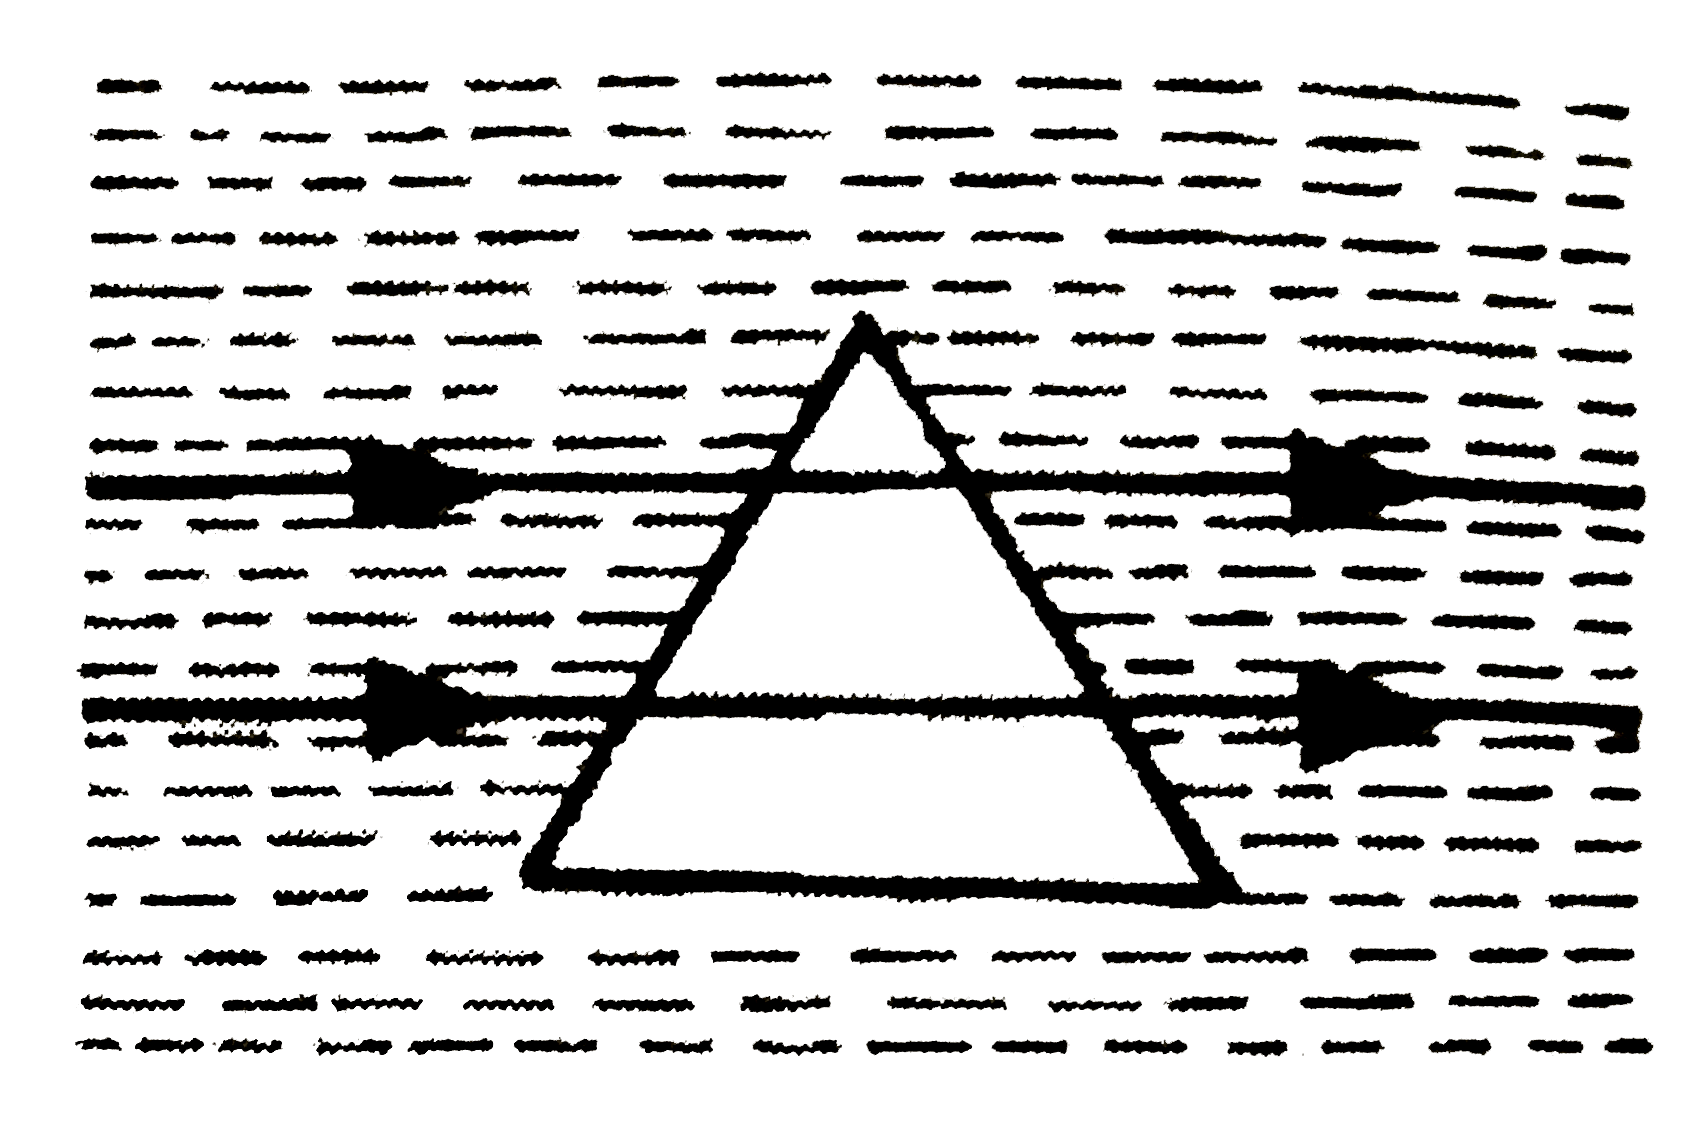 सिलिका का एक प्रिज्म ओइलिक अम्ल (n=1.46) में डूबा है। क्या आप चित्र में प्रकाश-किरणों का मार्ग देखकर सिलिका का अपवर्तनांक बता सकते है?